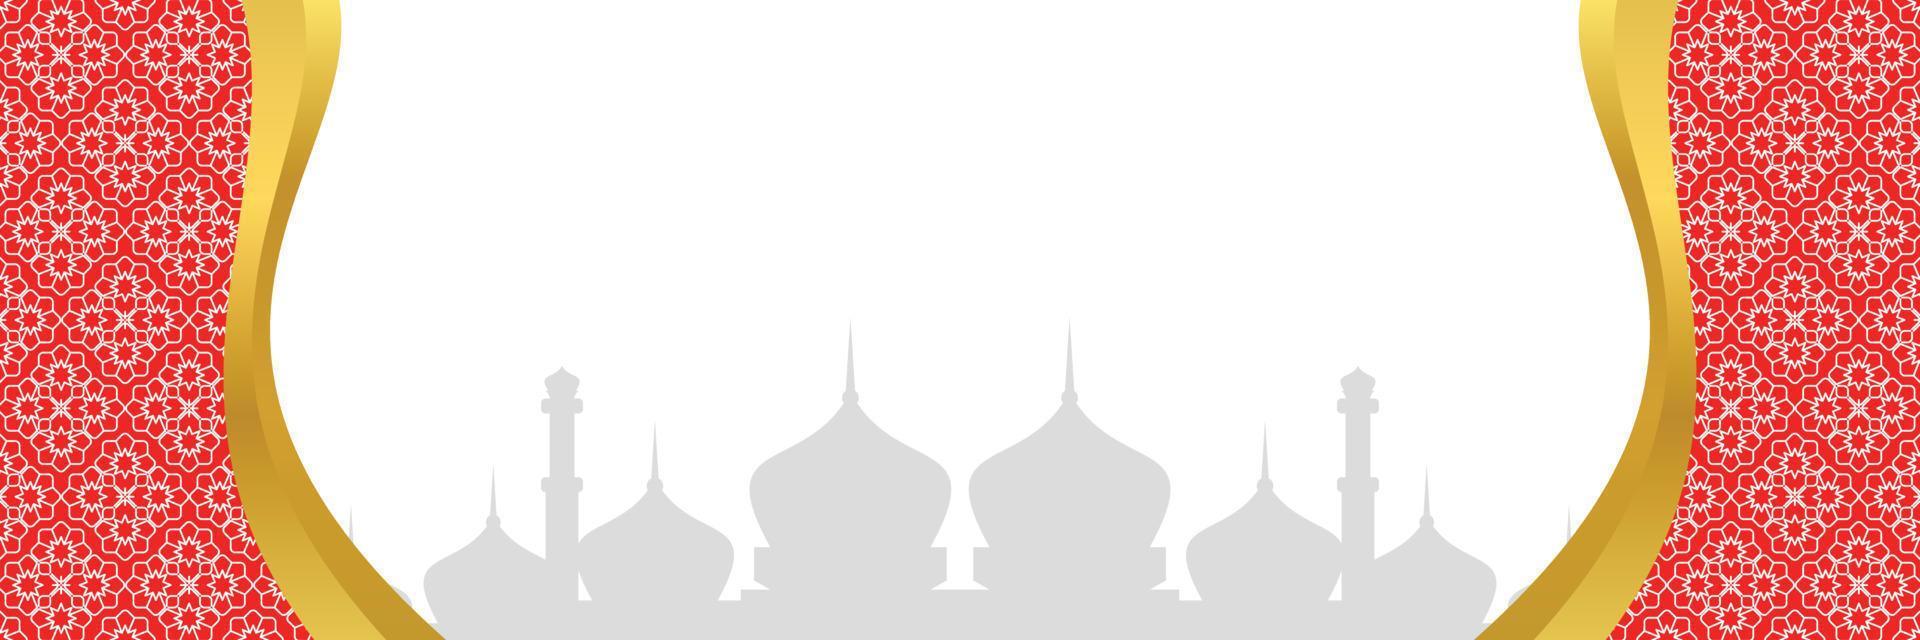 islamique arrière-plan, avec mandala ornement et mosquée silhouette. vecteur modèle pour bannières, salutation cartes pour islamique vacances, eid Al Fitr, ramadan, eid Al adha